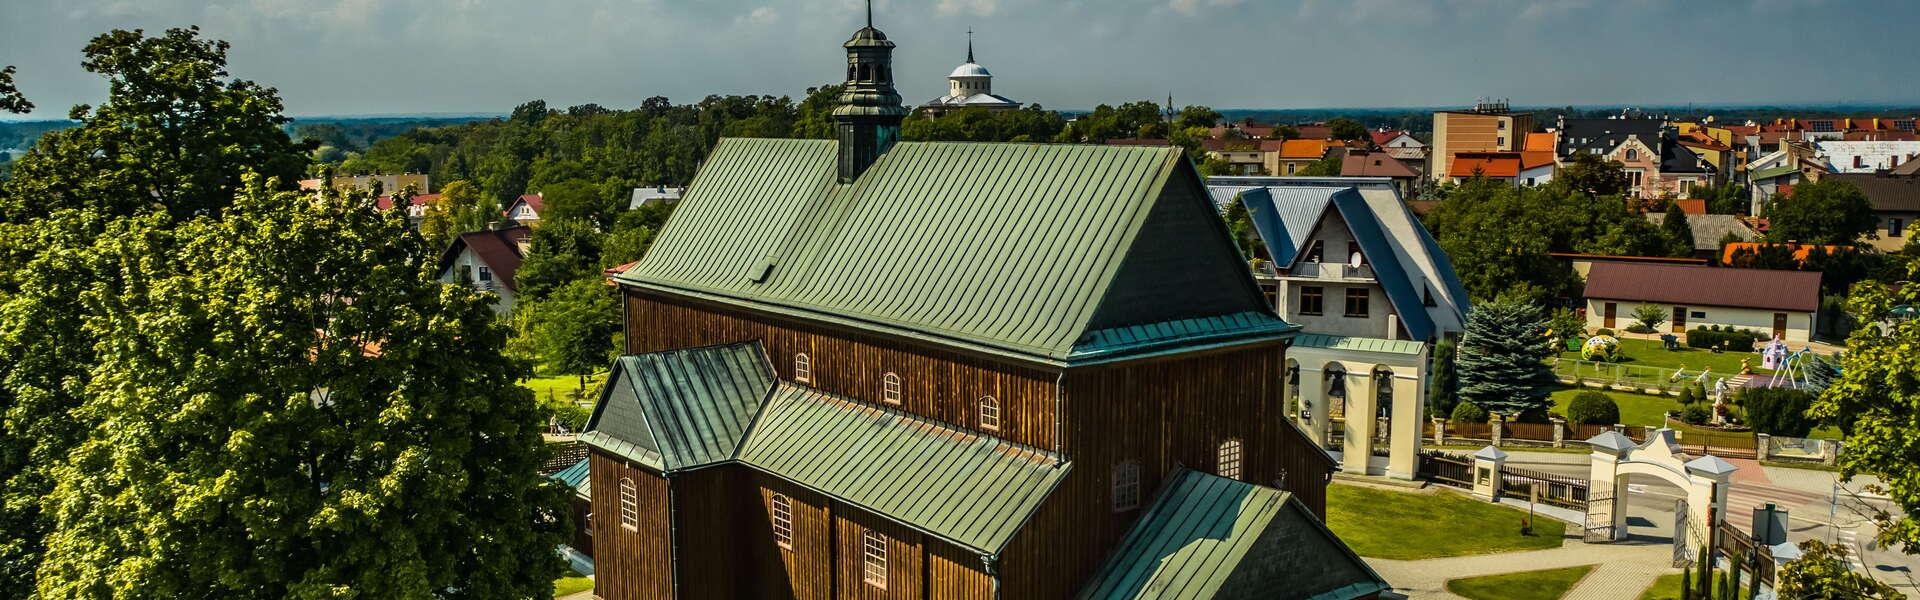 Widok na drewniany kościół w Dąbrowie Tarnowskiej. Wokół budynku znajdują się drzewa. W tle zabudowania miasta.